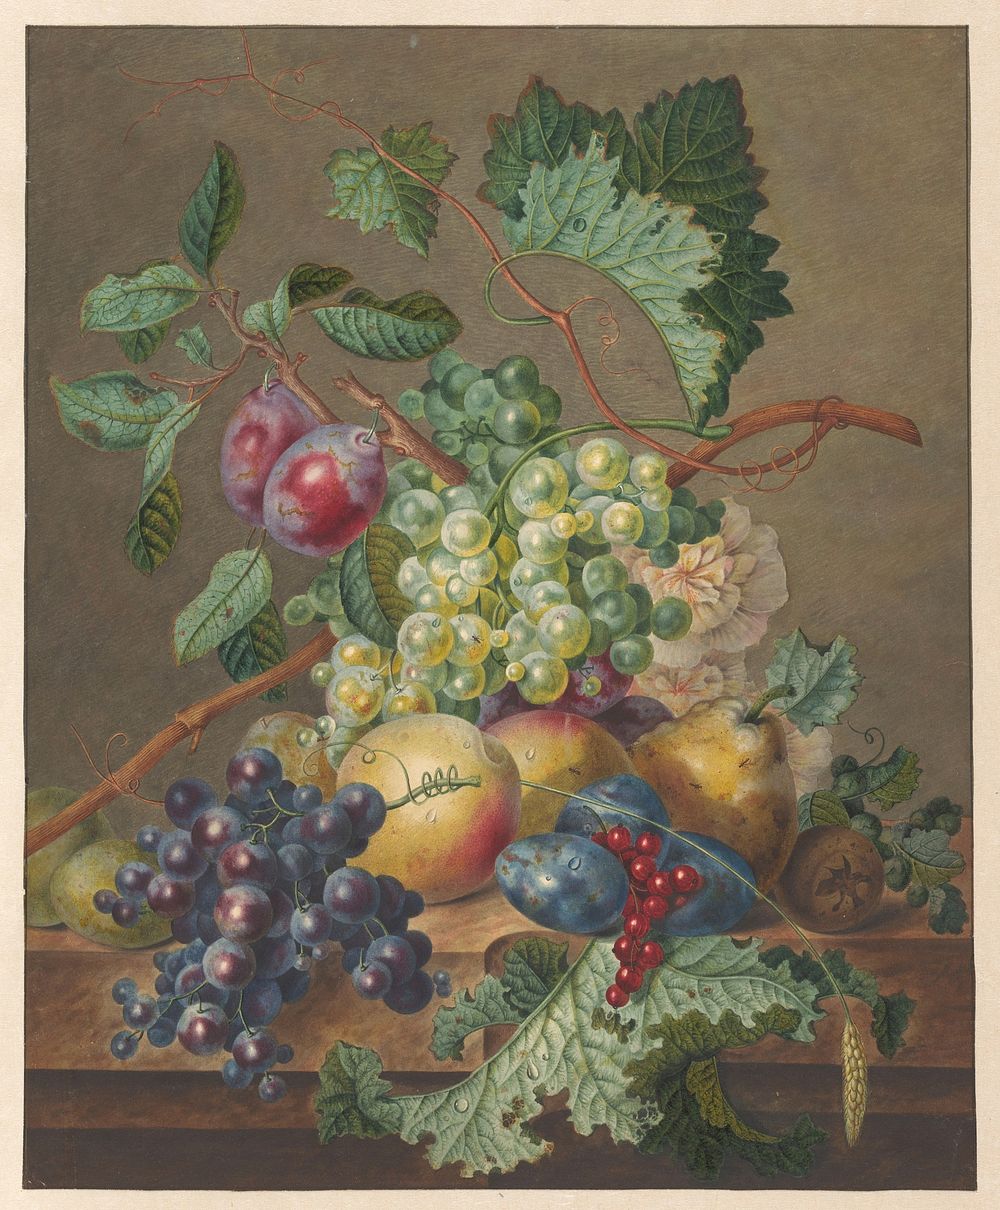 Stilleven met vruchten (1700 - 1800) by Jan de Bruyn and Johannes Cornelis de Bruyn